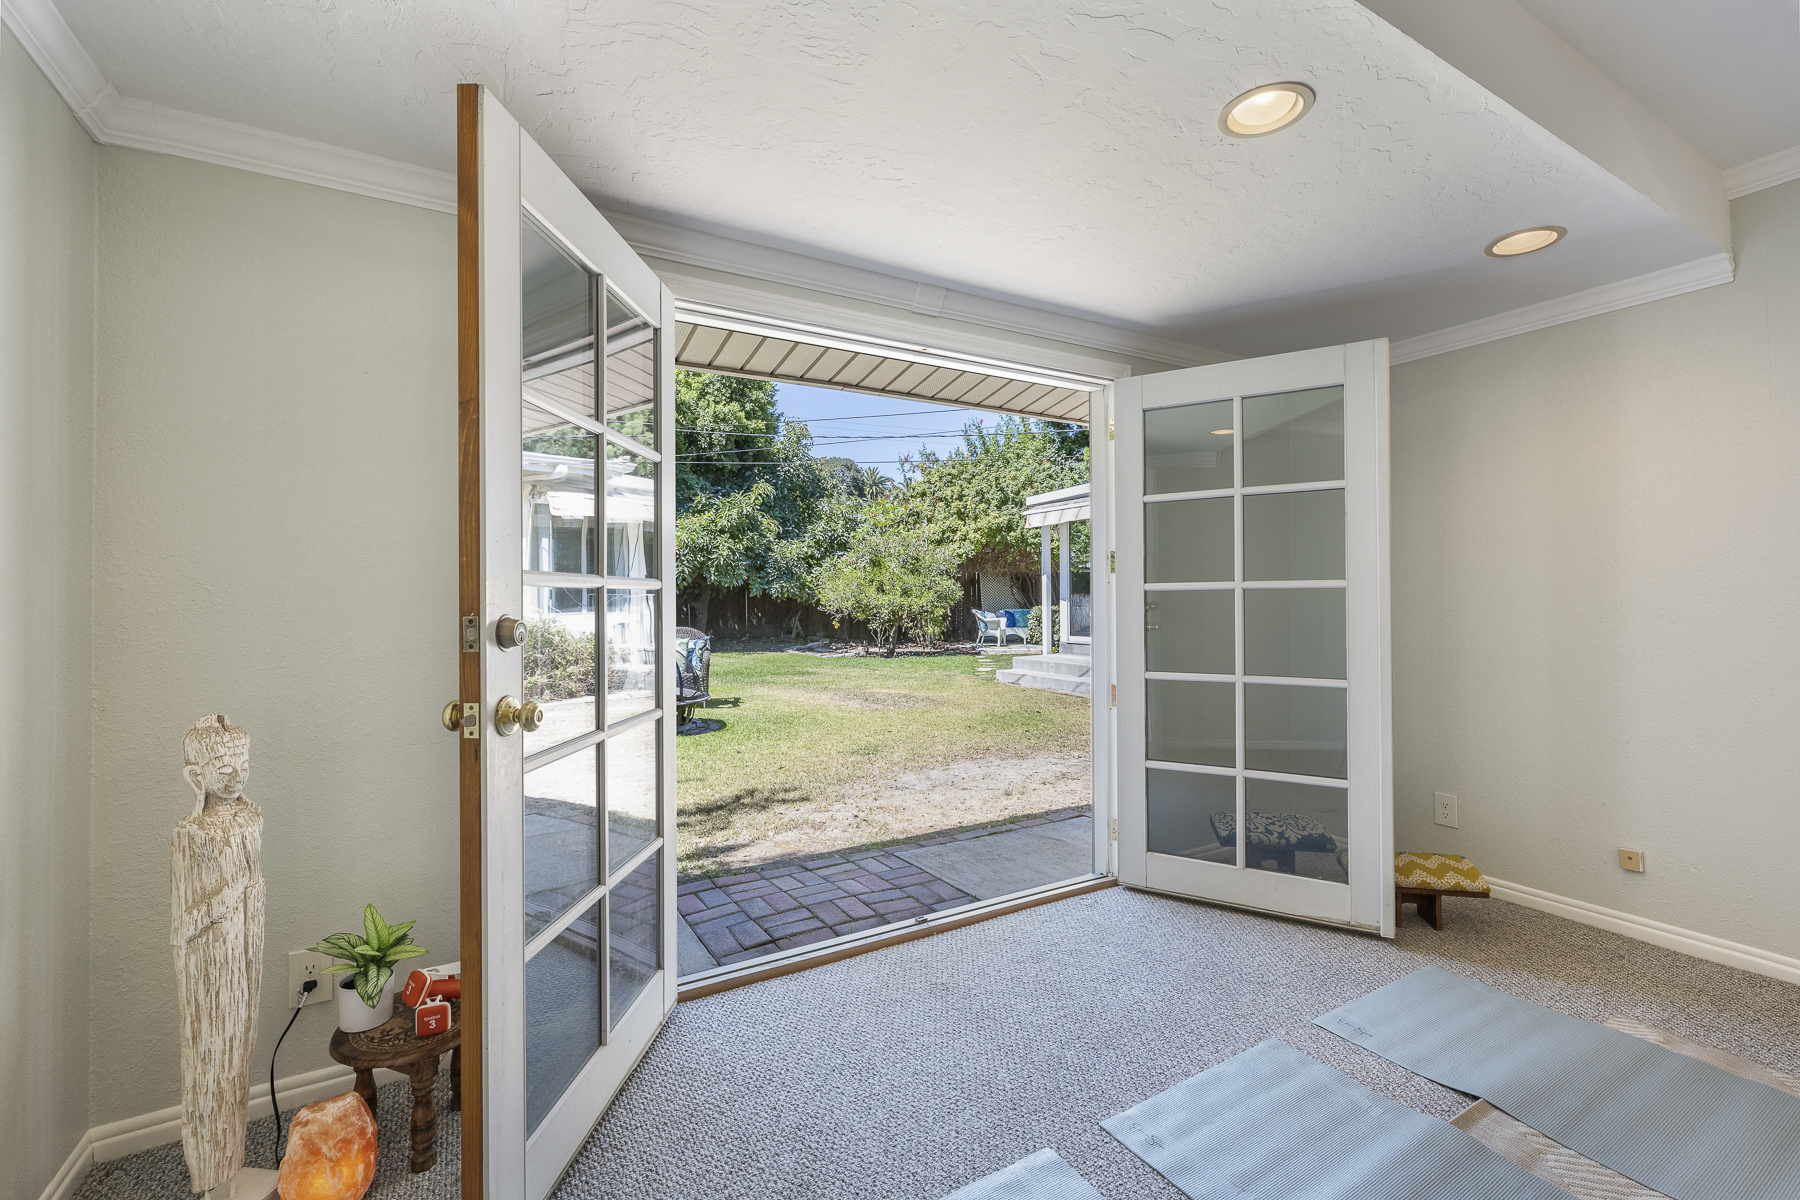 411 Truman Ave, Fullerton, CA 92832: Bedroom with exterior double door view.